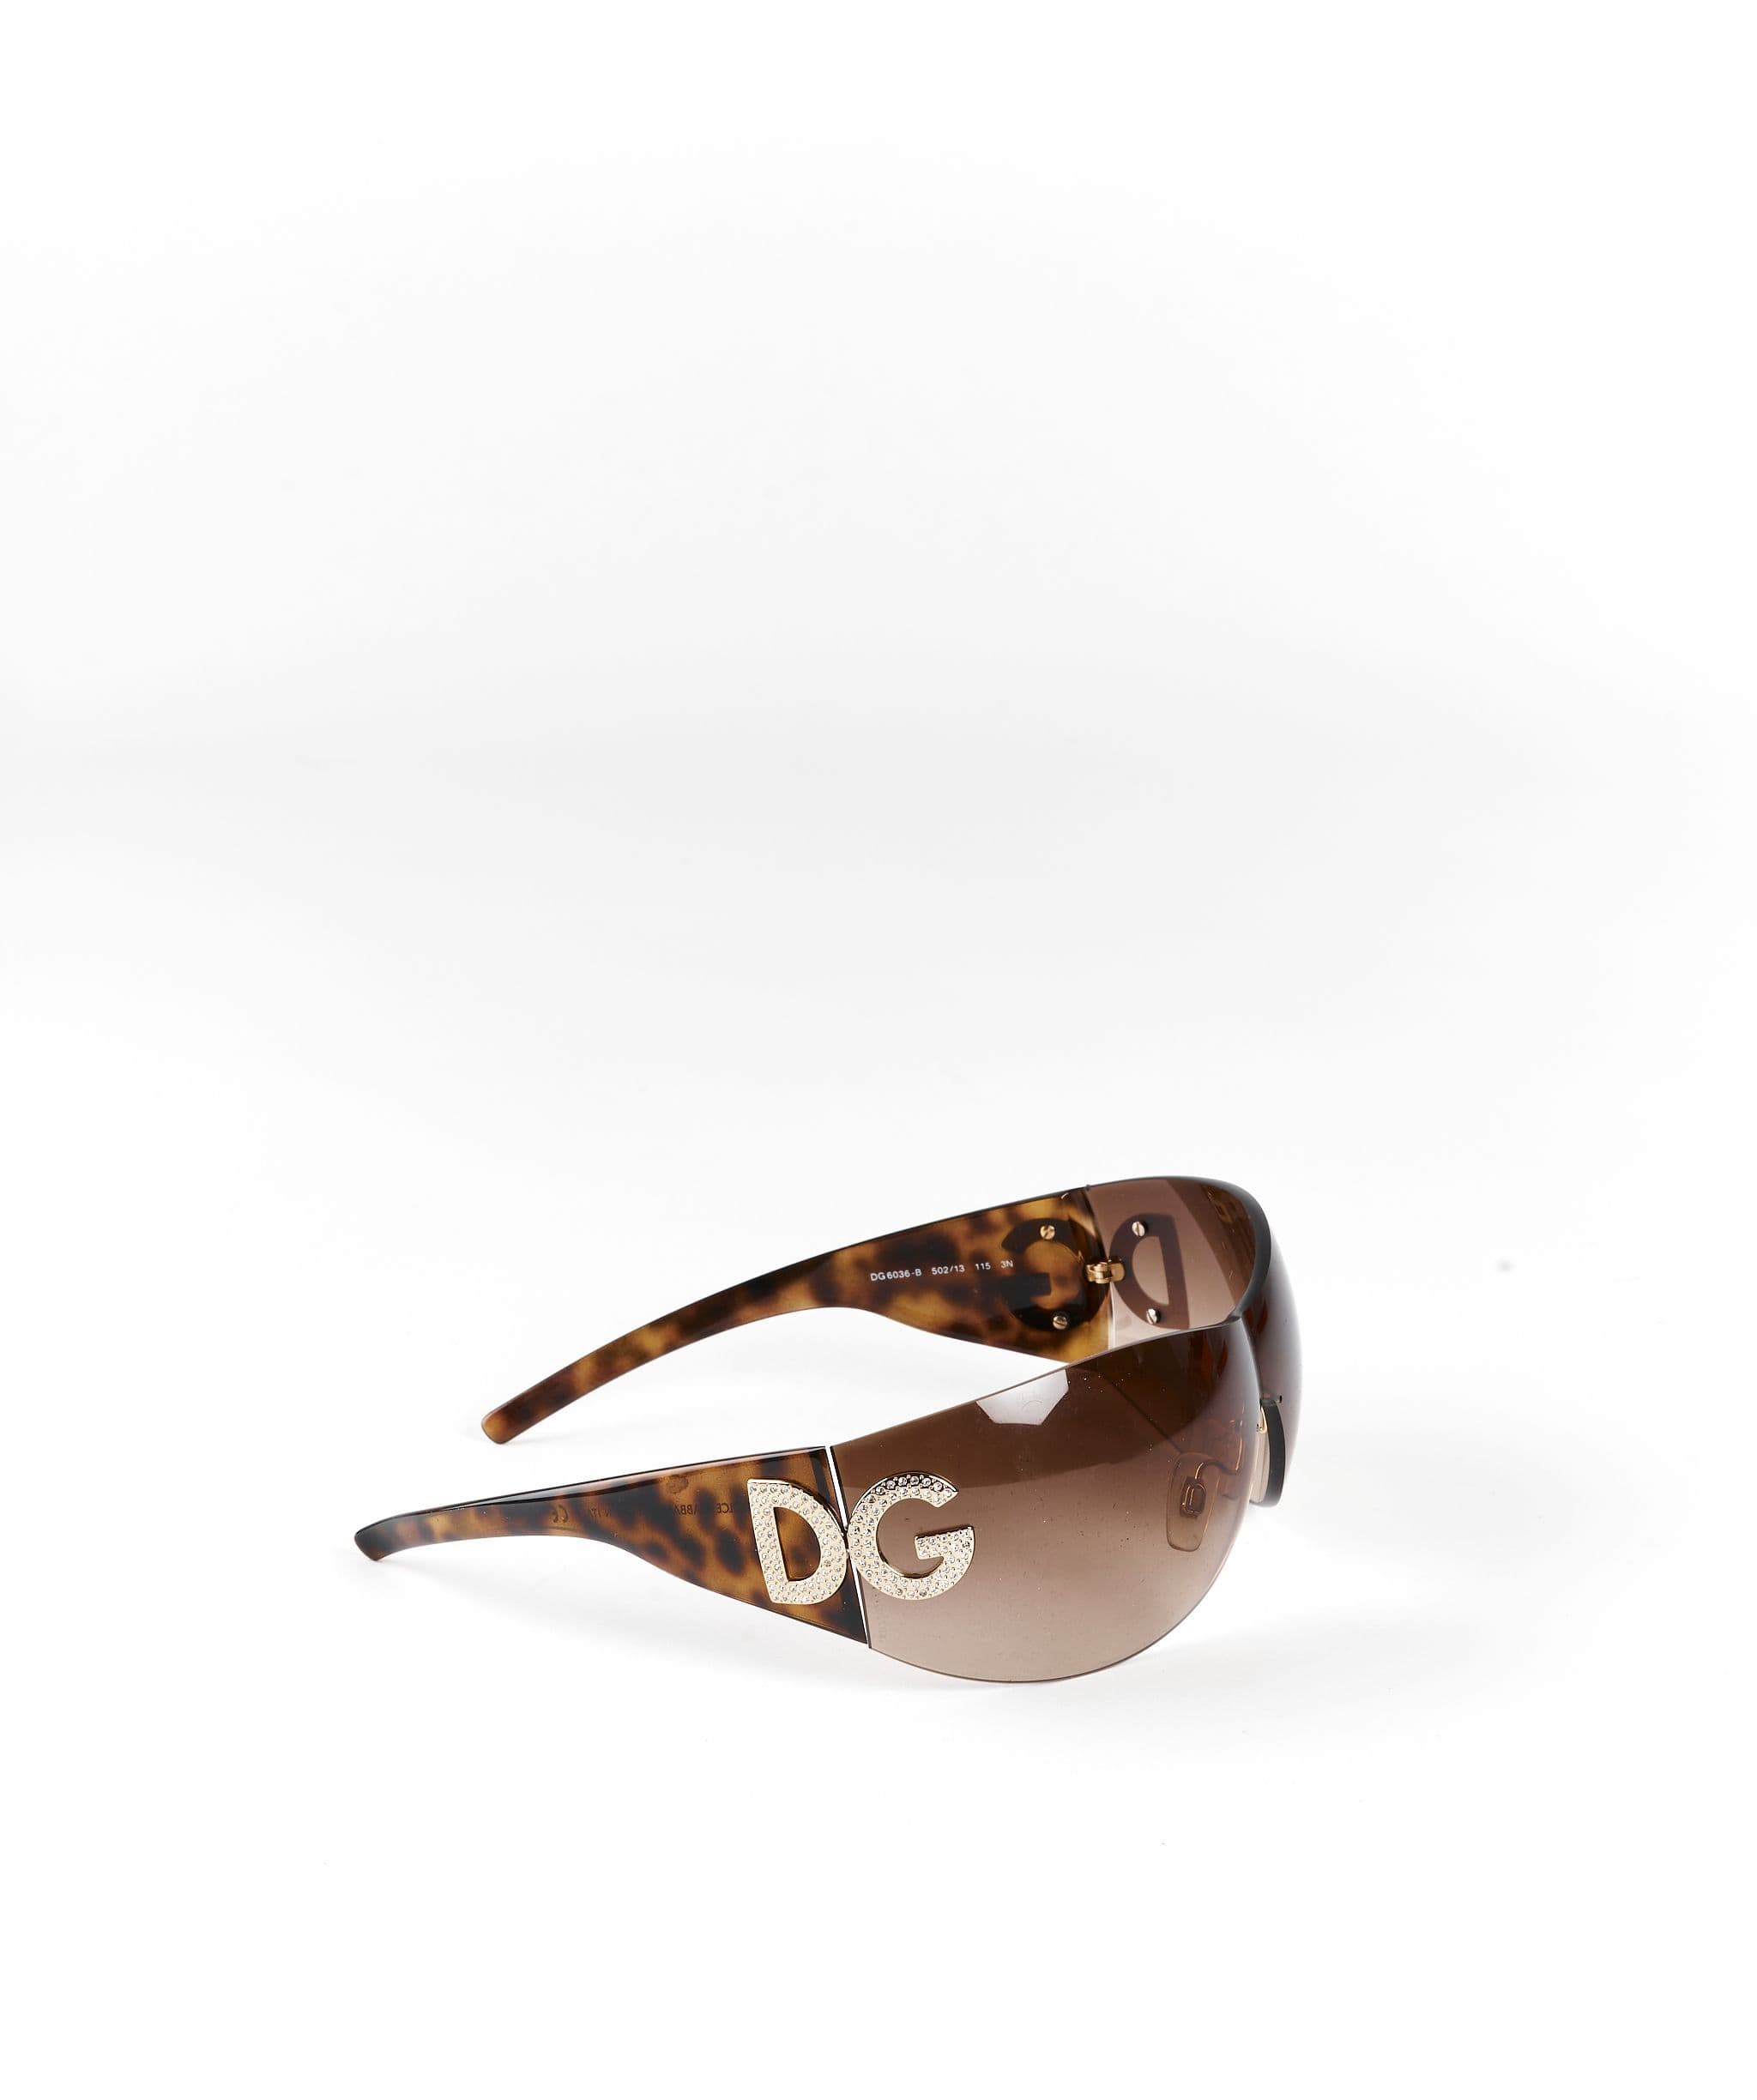 Dolce & Gabbana Dolce & gabbanna Brown Sunglasses